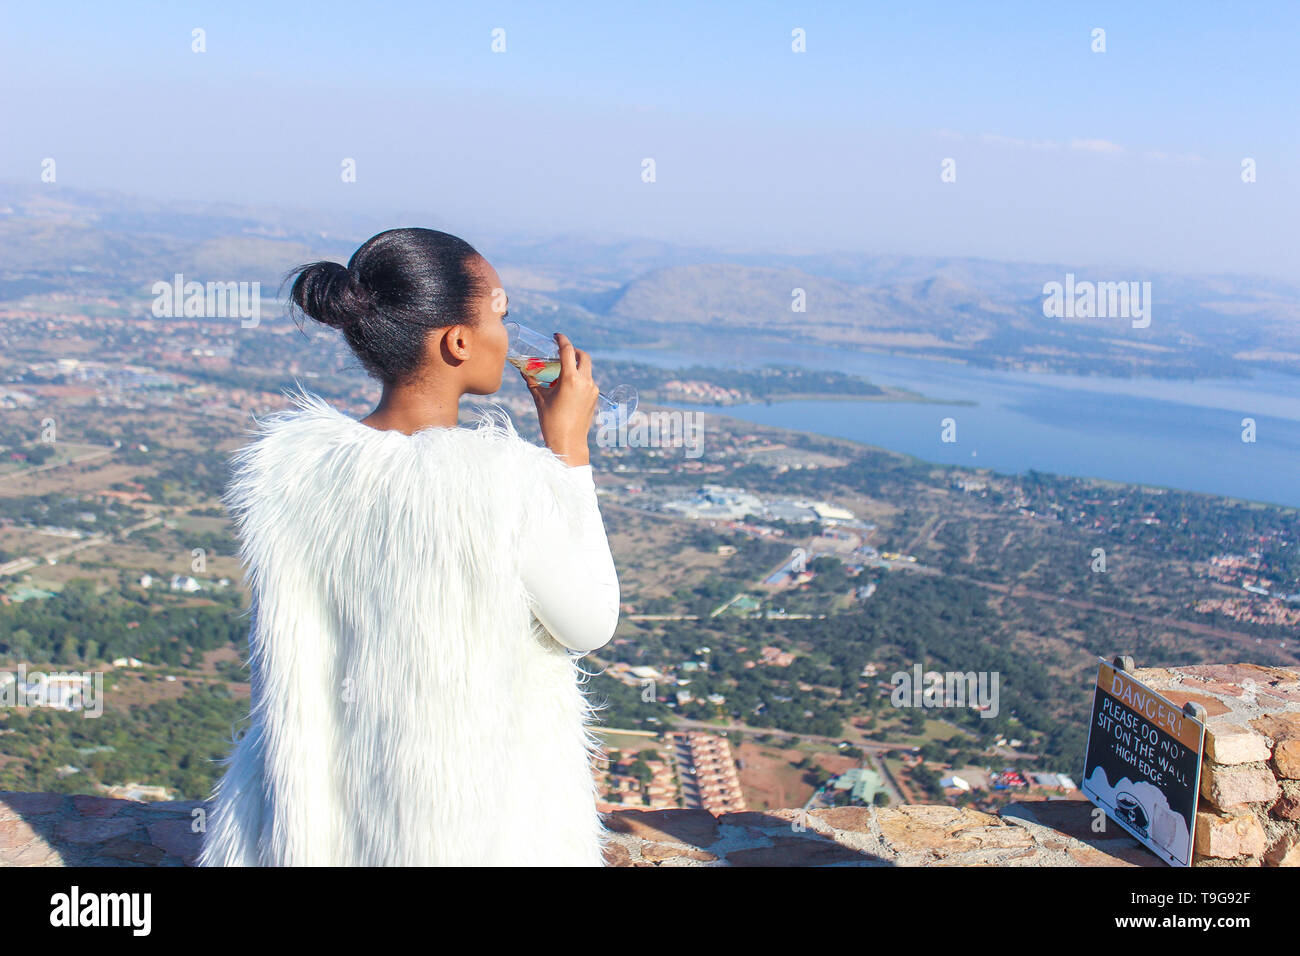 Una signora sorseggiando un bicchiere di vino su una splendida vista del paesaggio. Foto Stock